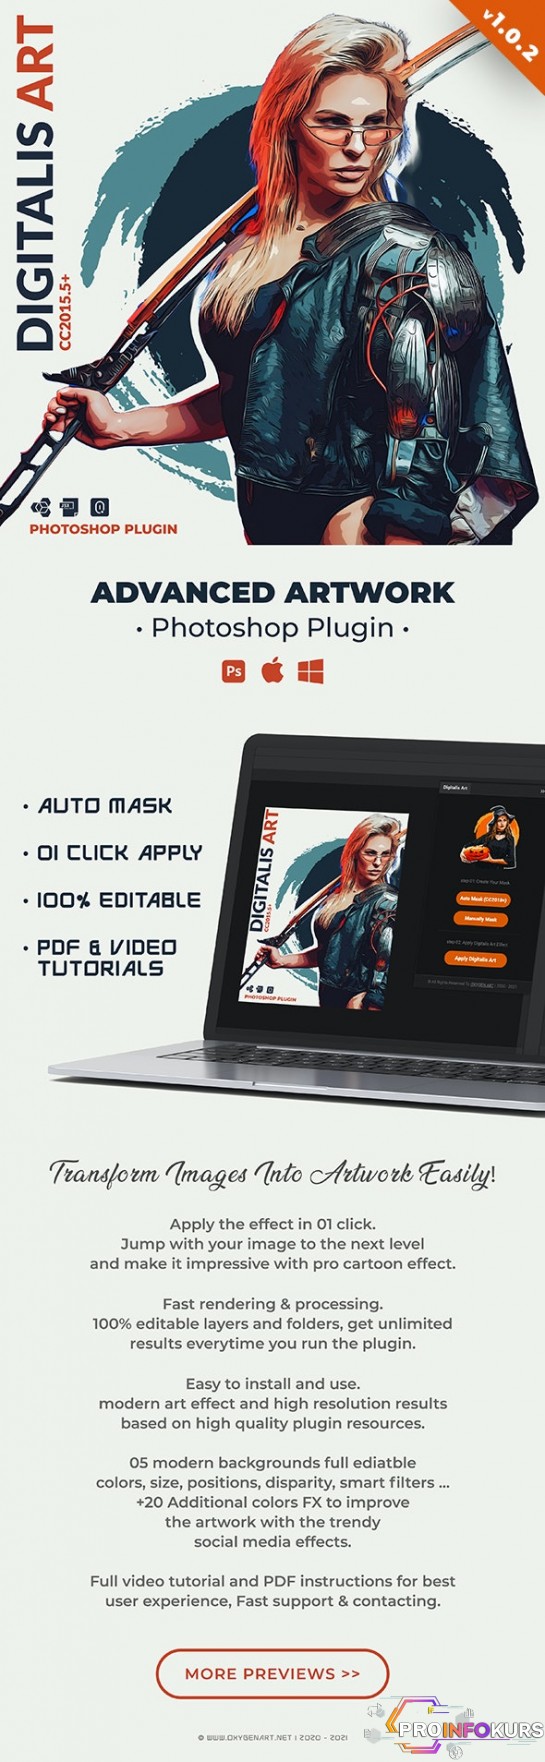 скачать бесплатно [Graphicriver] Digitalis Art | Photoshop Plugin (2021)